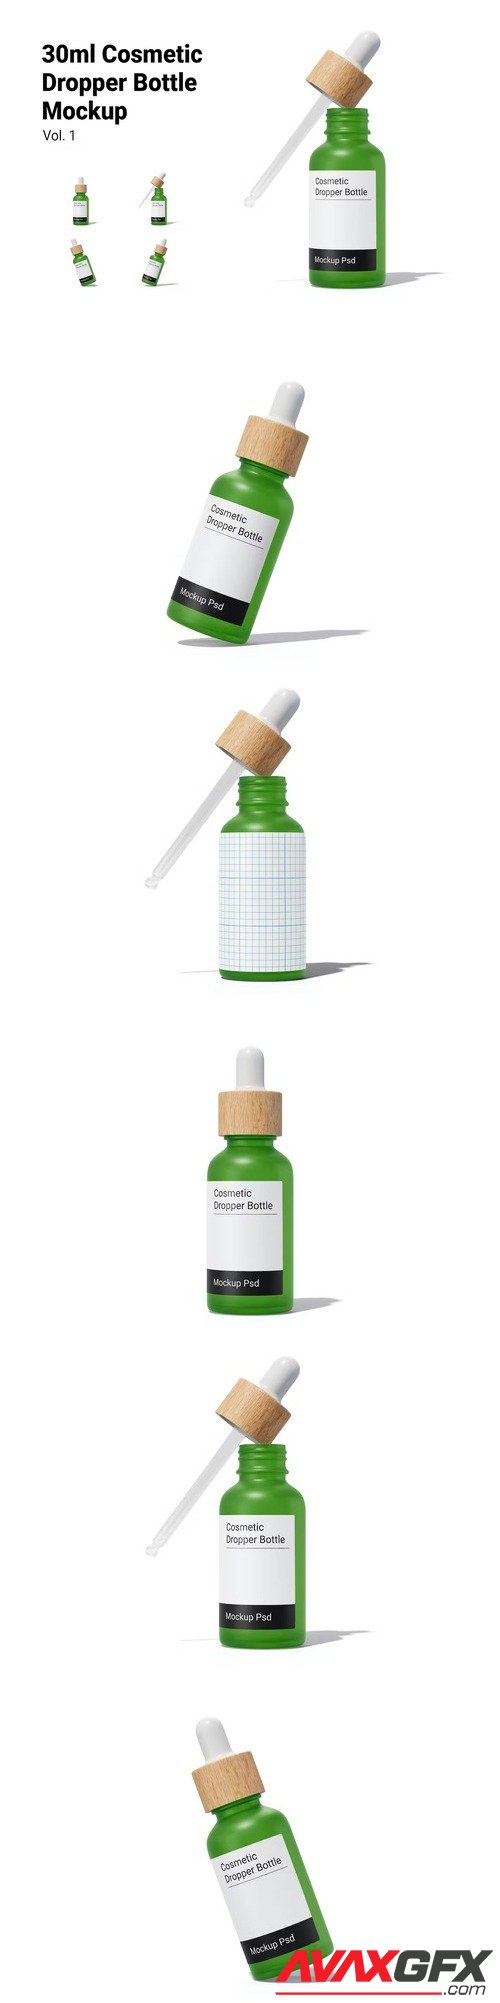 Cosmetic Dropper Bottle Mockup Vol.1 [PSD]